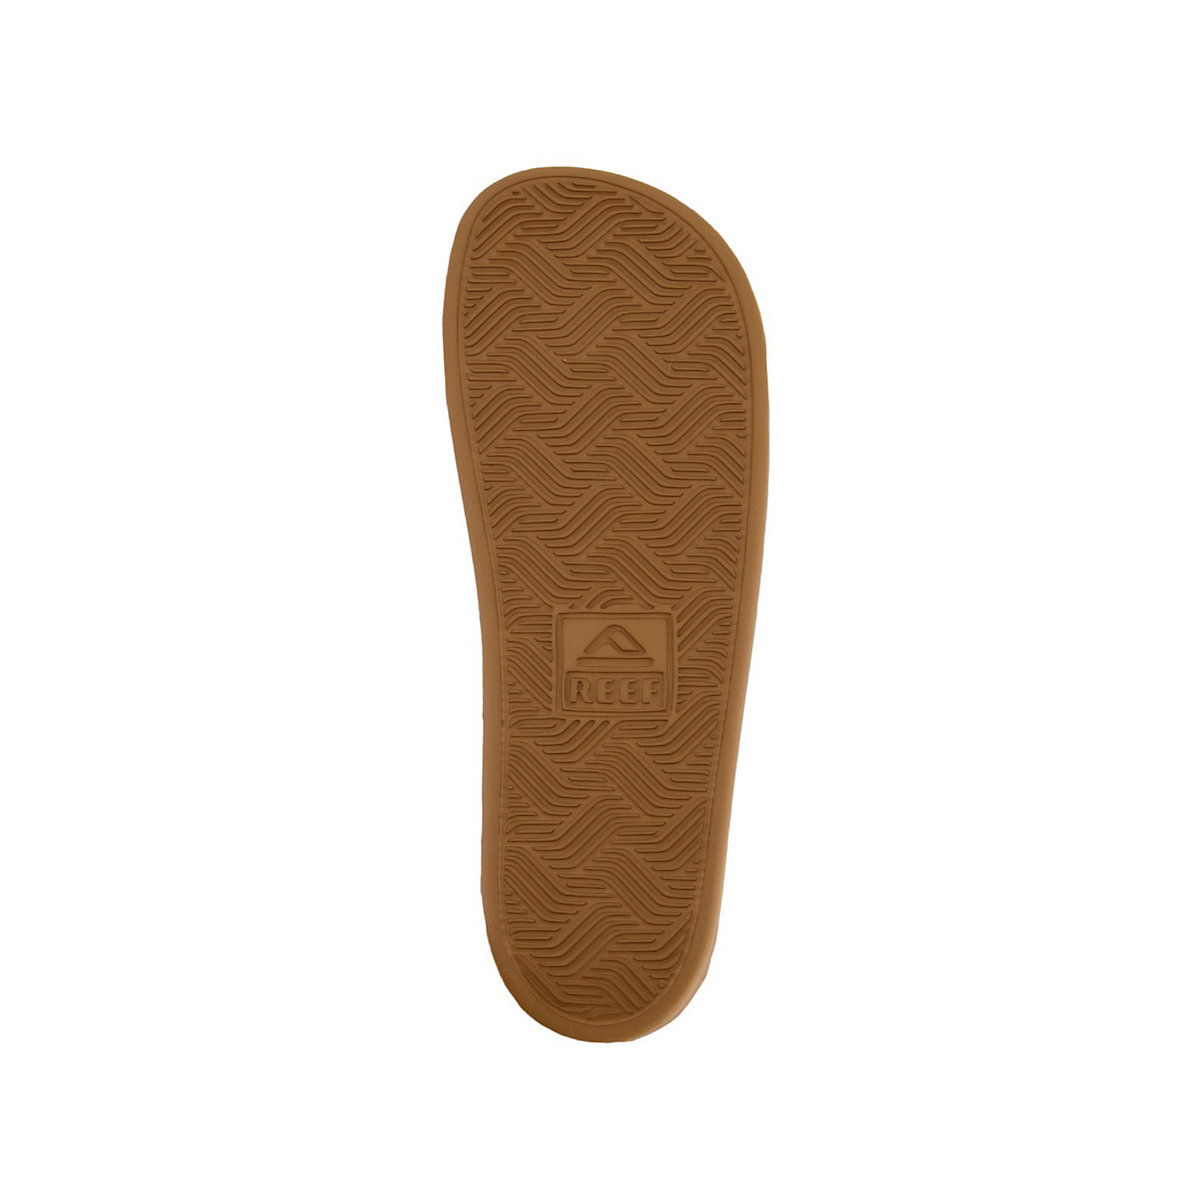 REEF Komfortsandalen Cushion Tradewind Cork Komfort-Sandalen schwarz/beige